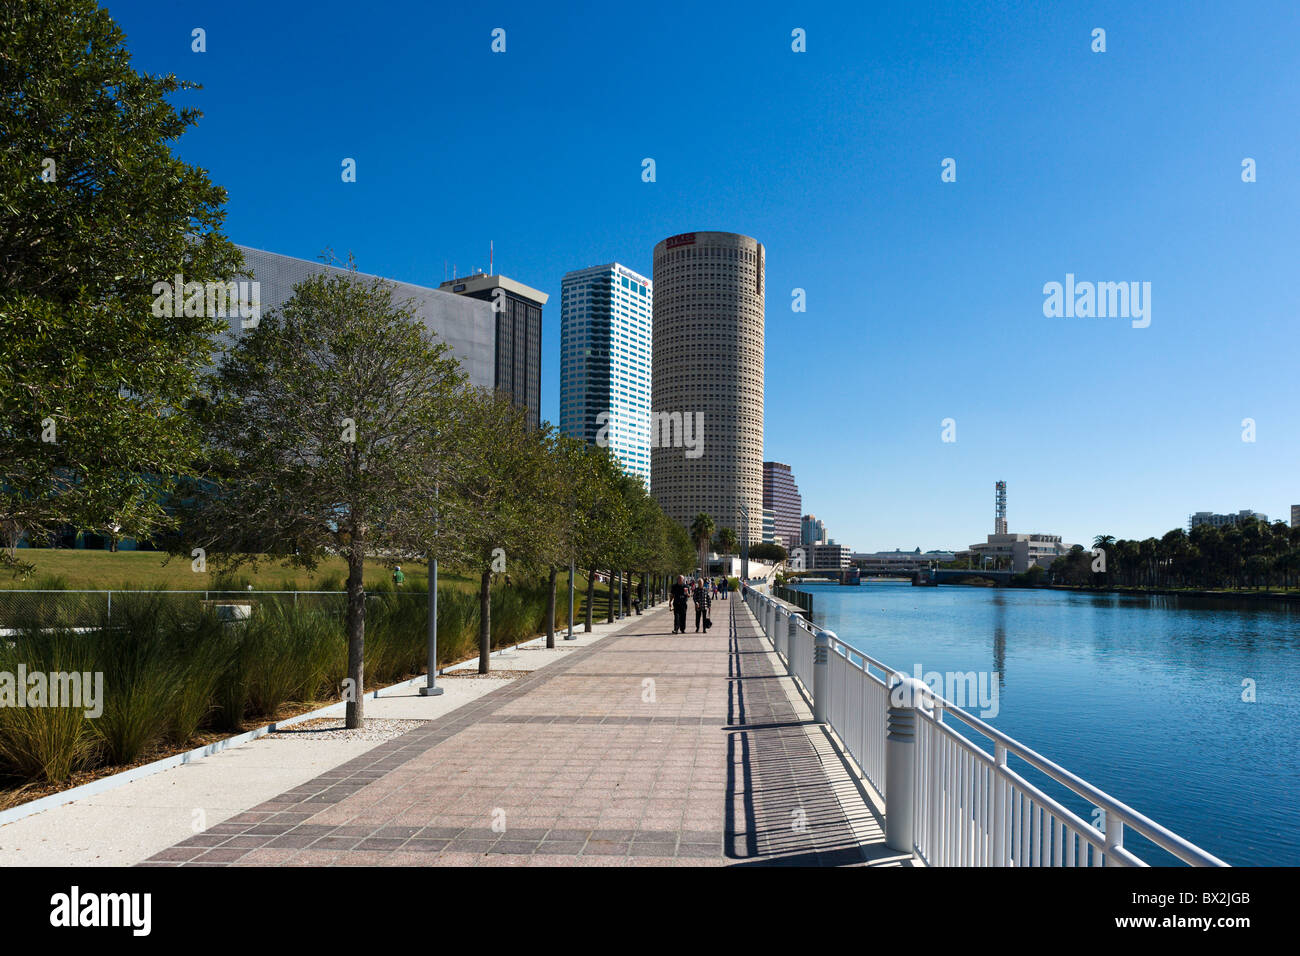 Tampa Riverwalk sur les rives de la rivière Hillsborough, près du Musée de l'Art, Tampa, Florida, USA Banque D'Images